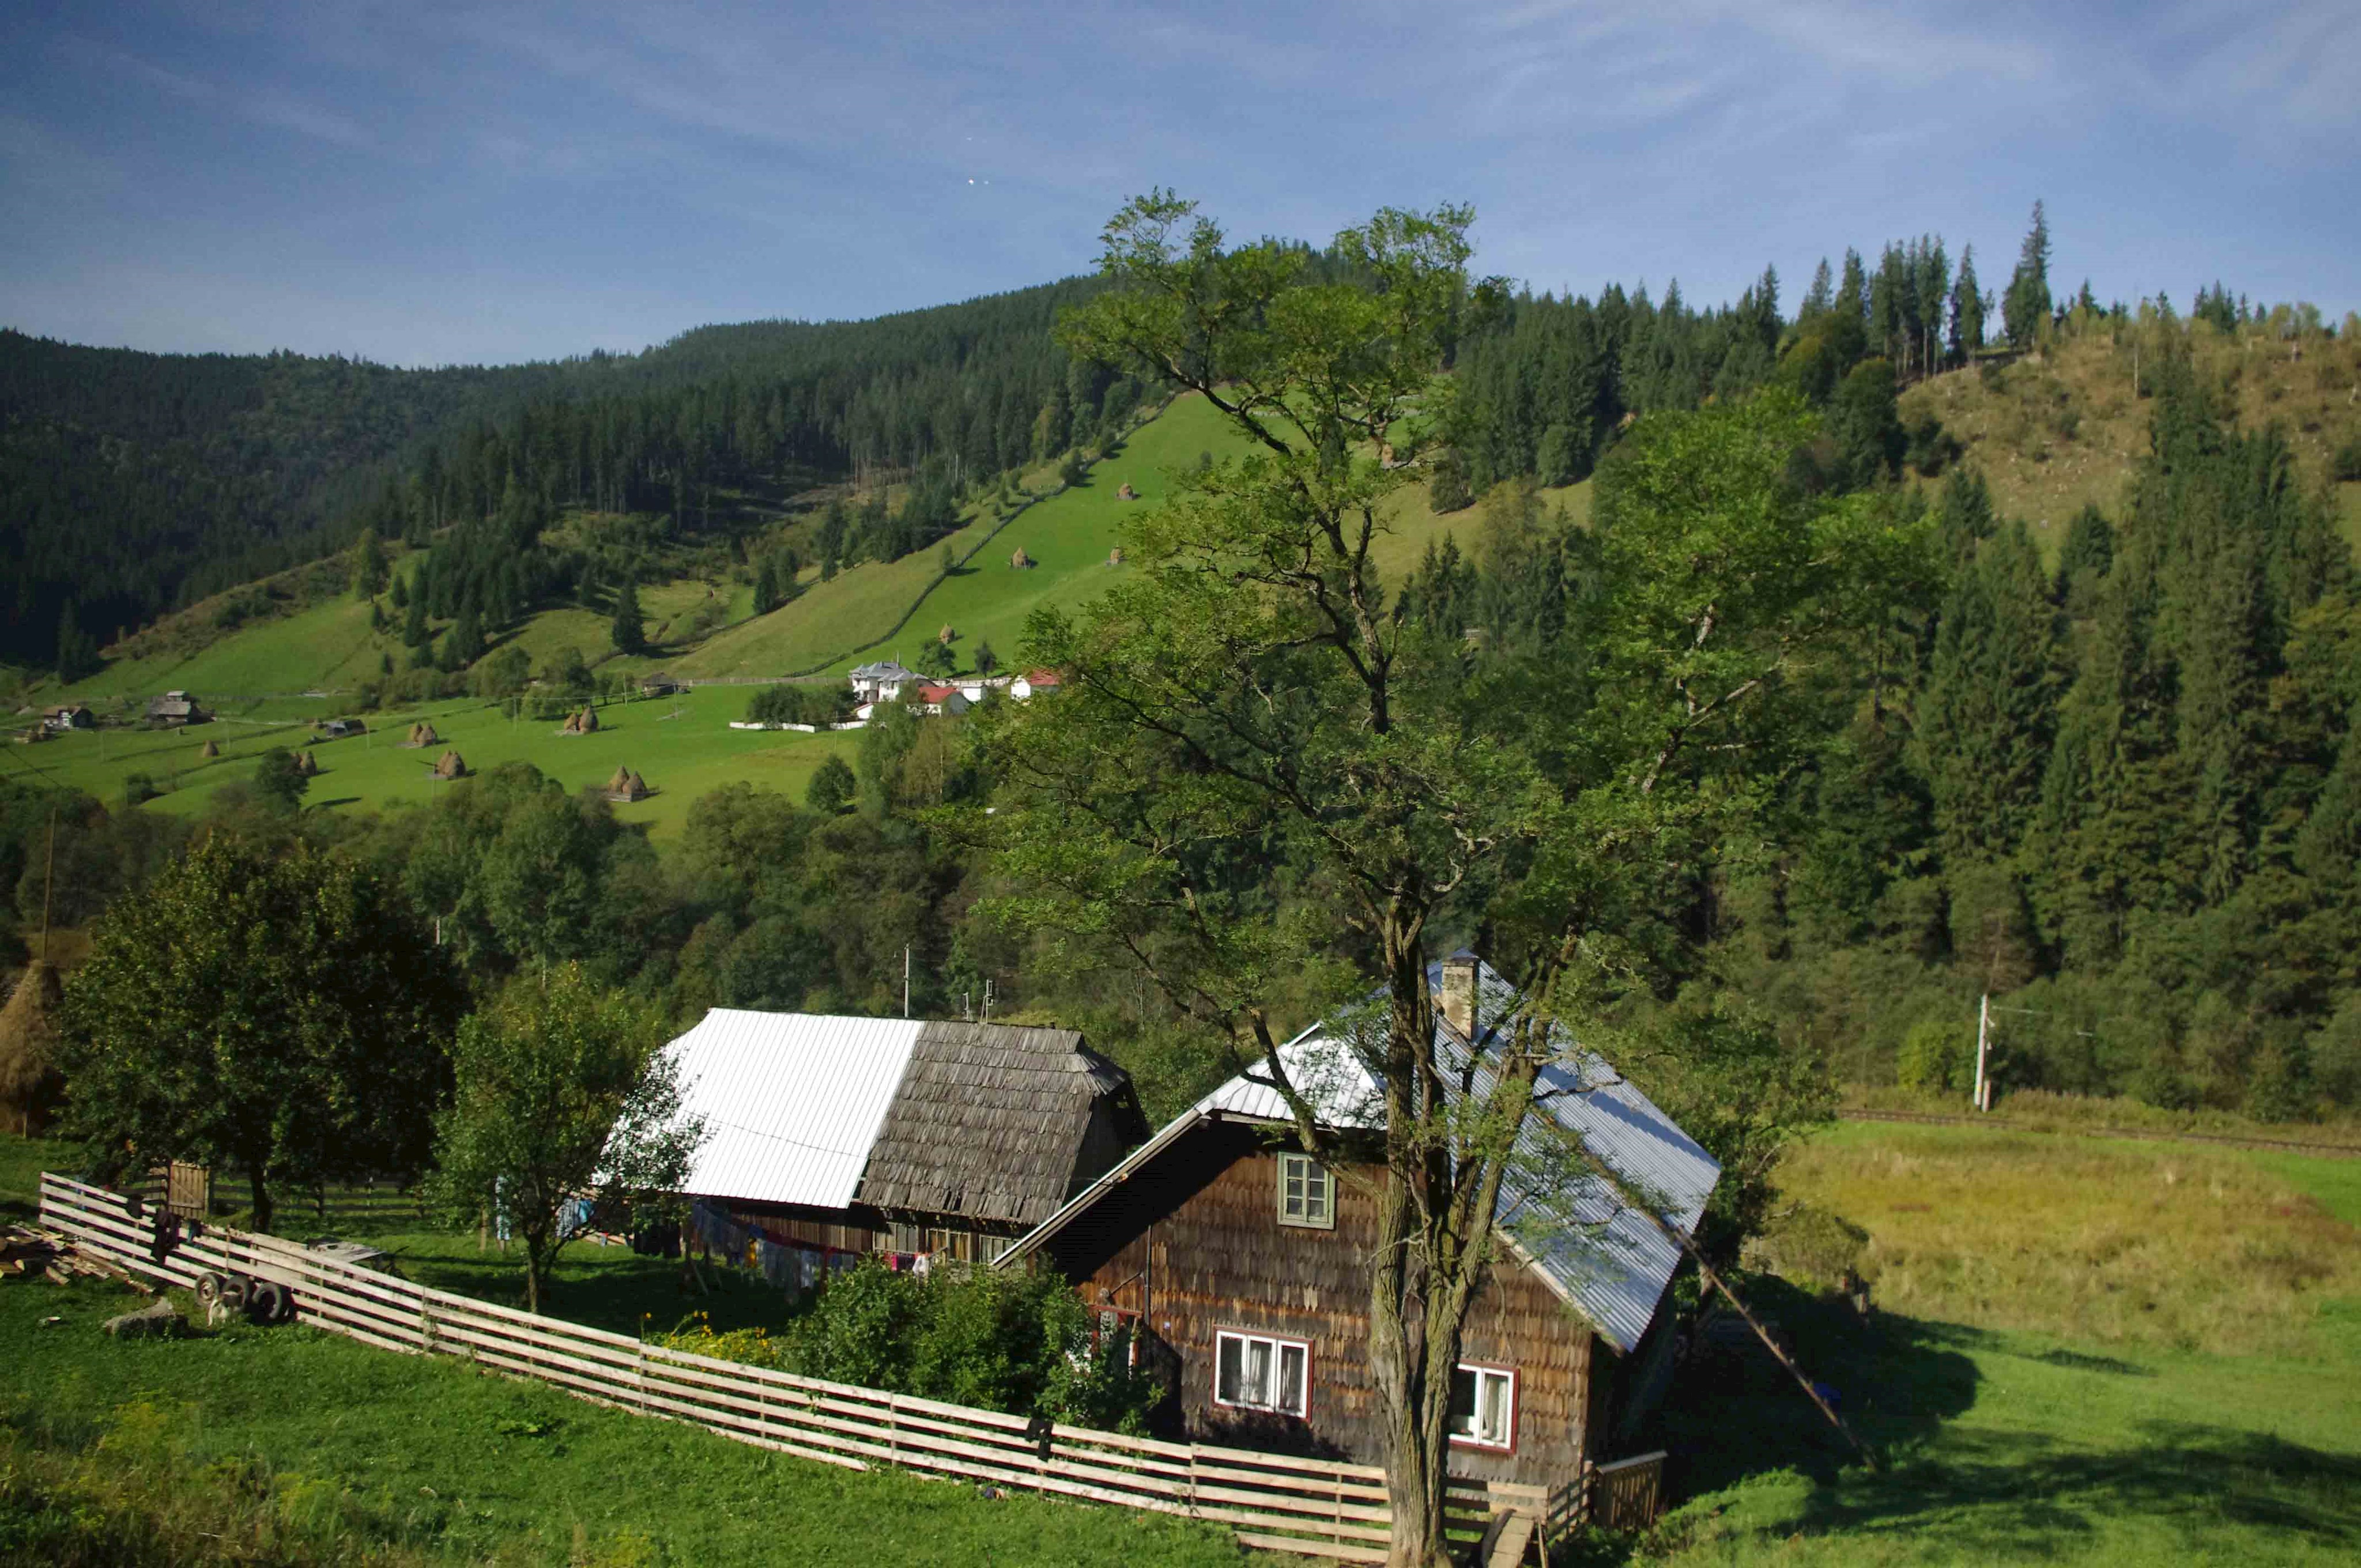 Unverbaute Landschaften findet man in der Region der Moldauklöster in der rumänischen Südbukowina